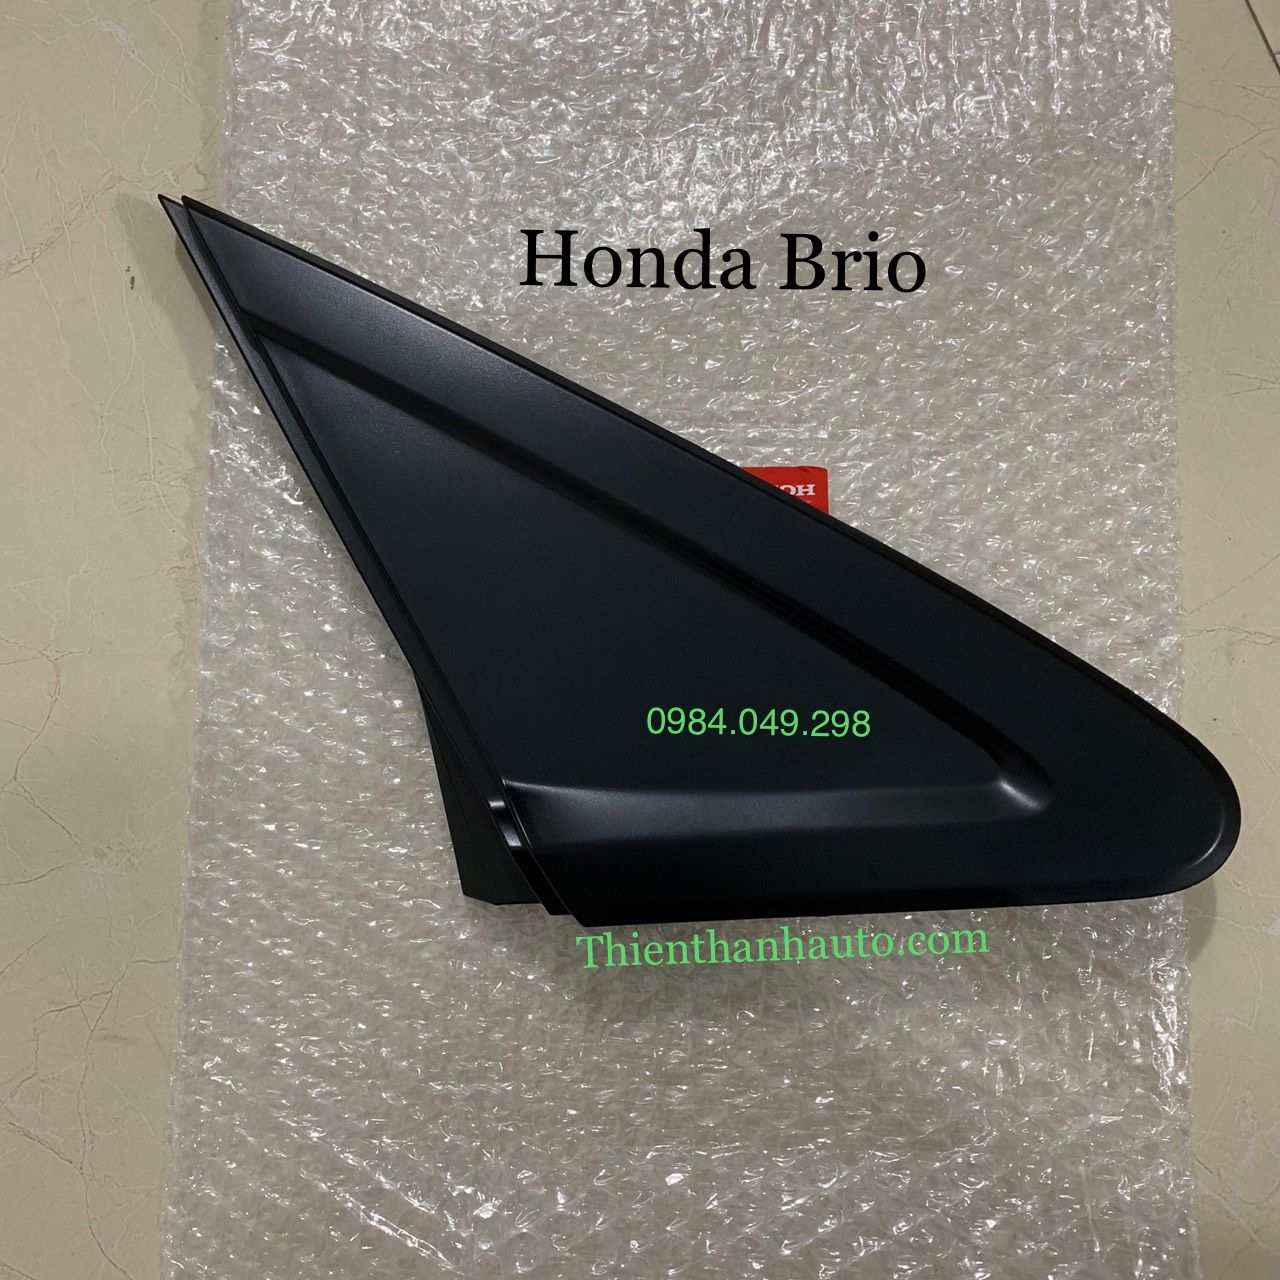 Ốp tam giác góc kính cửa trước phải Honda Brio chính hãng - Thienthanhauto.com